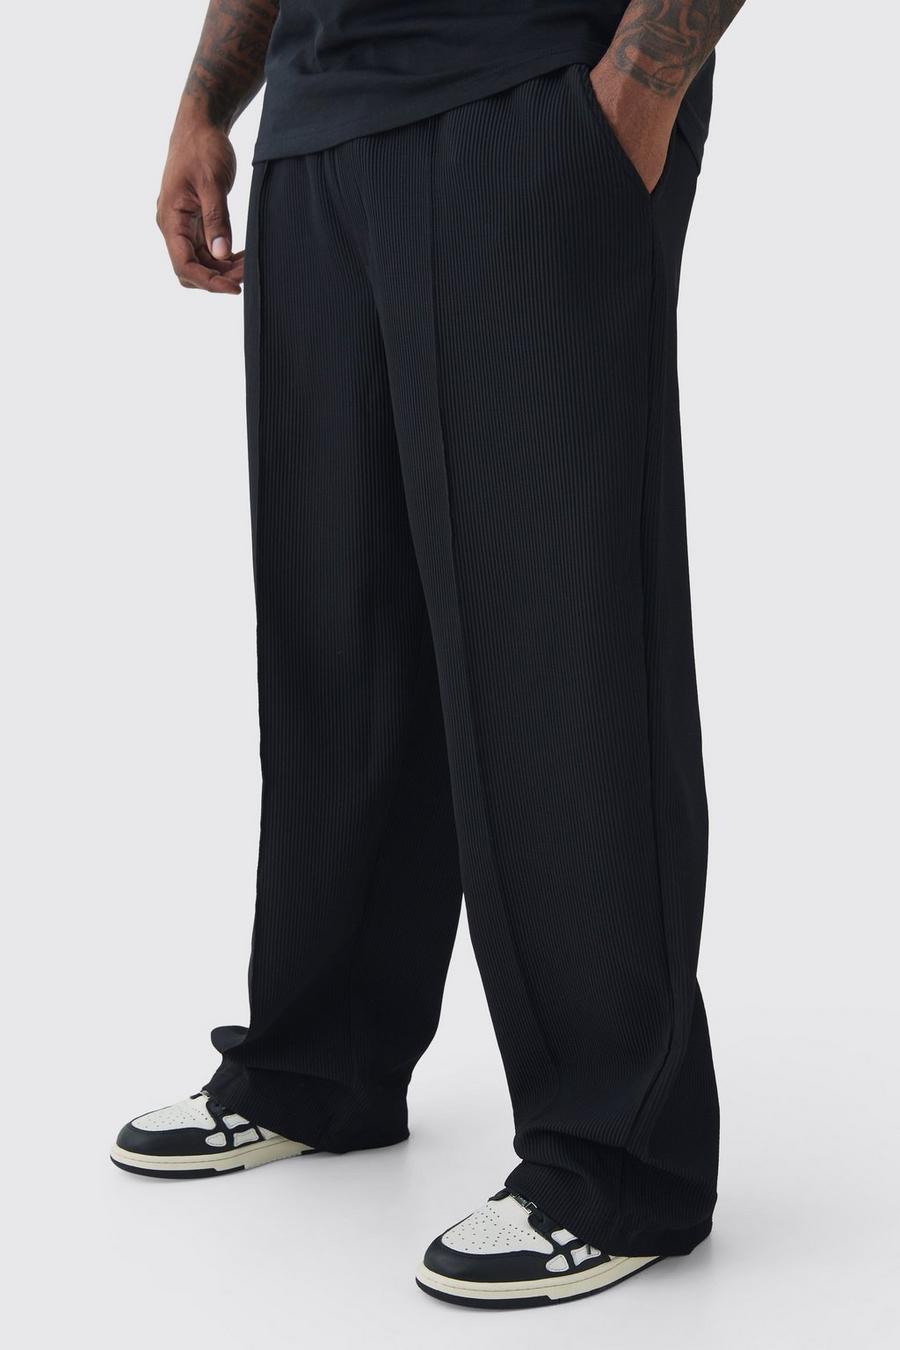 Pantalón Plus holgado plisado con cintura elástica, Black